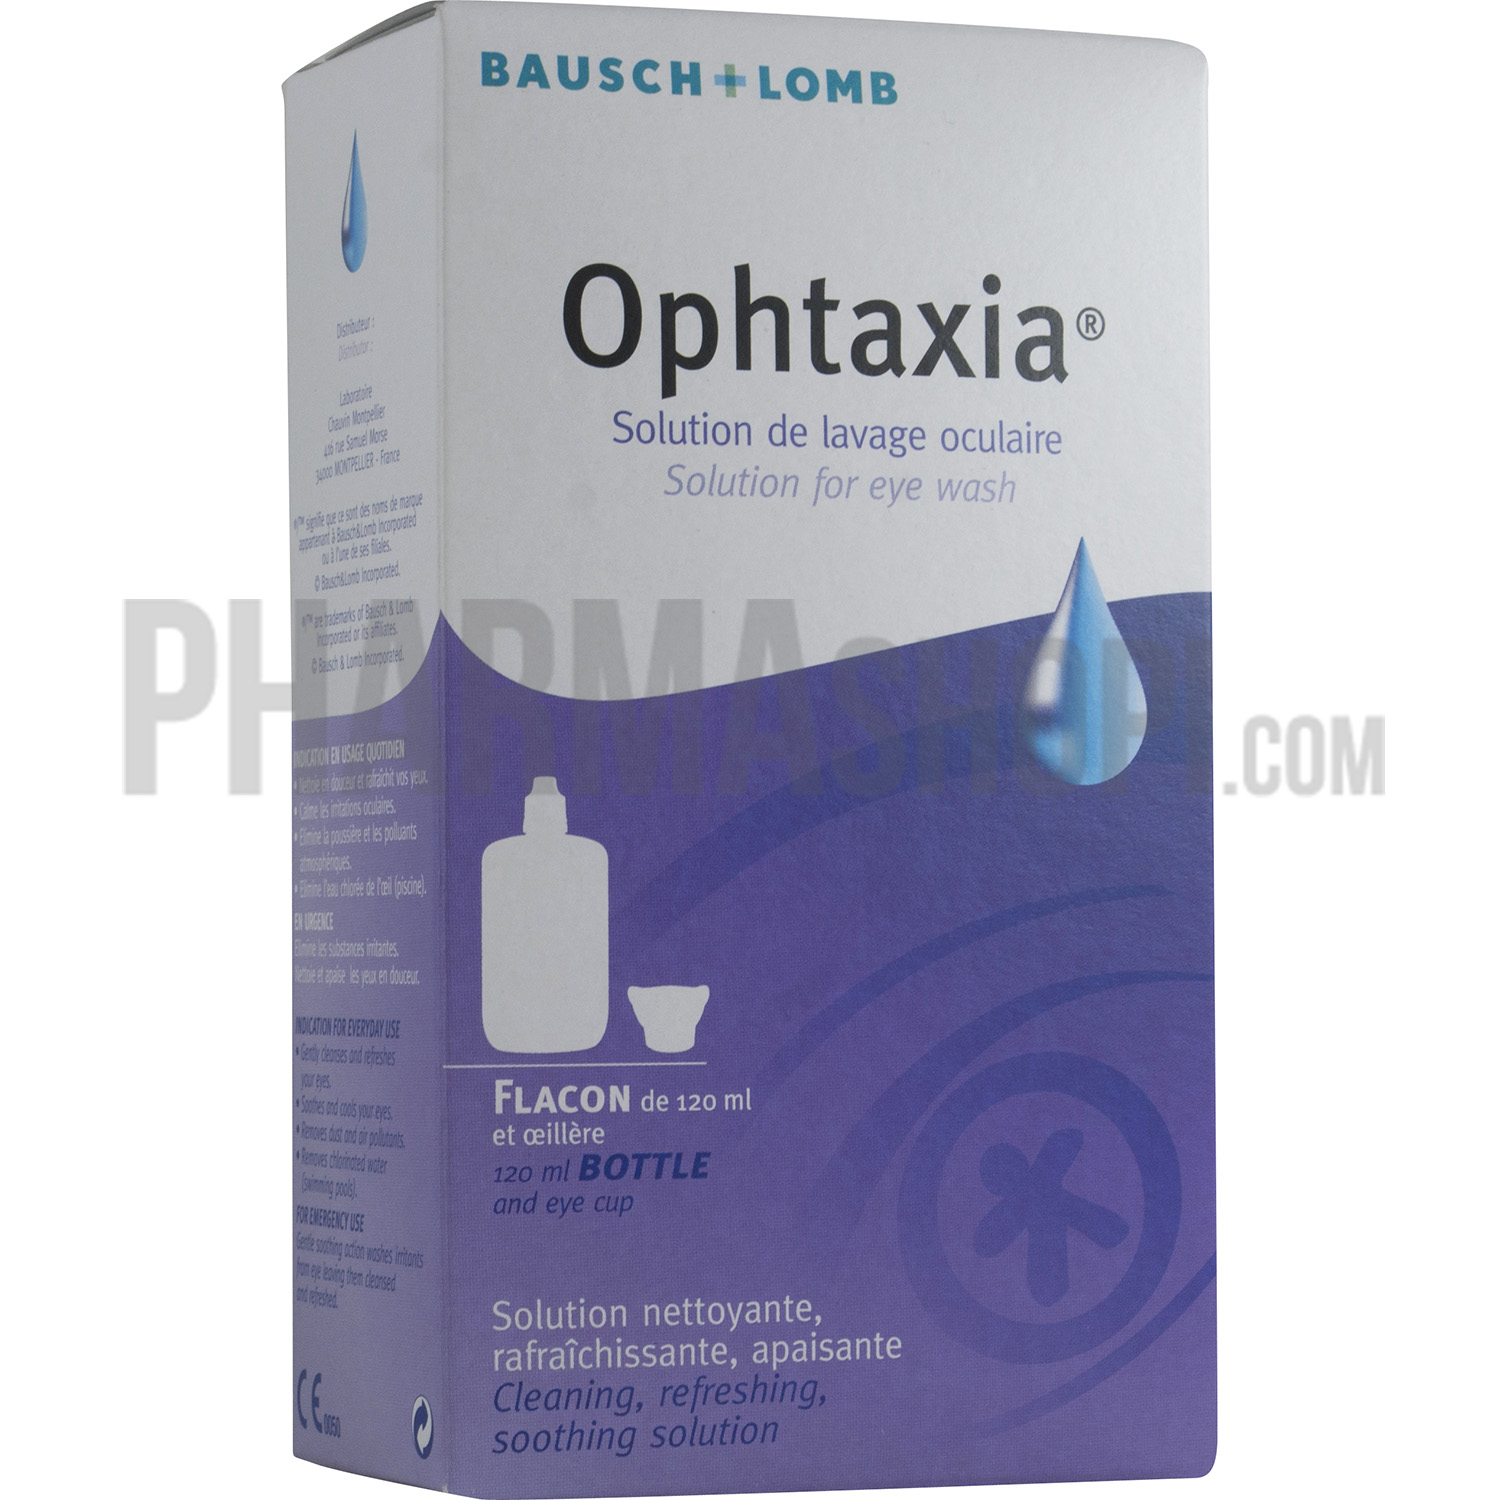 Ophtaxia solution de lavage oculaire Bausch & Lomb - flacon de 120 ml et oeillère